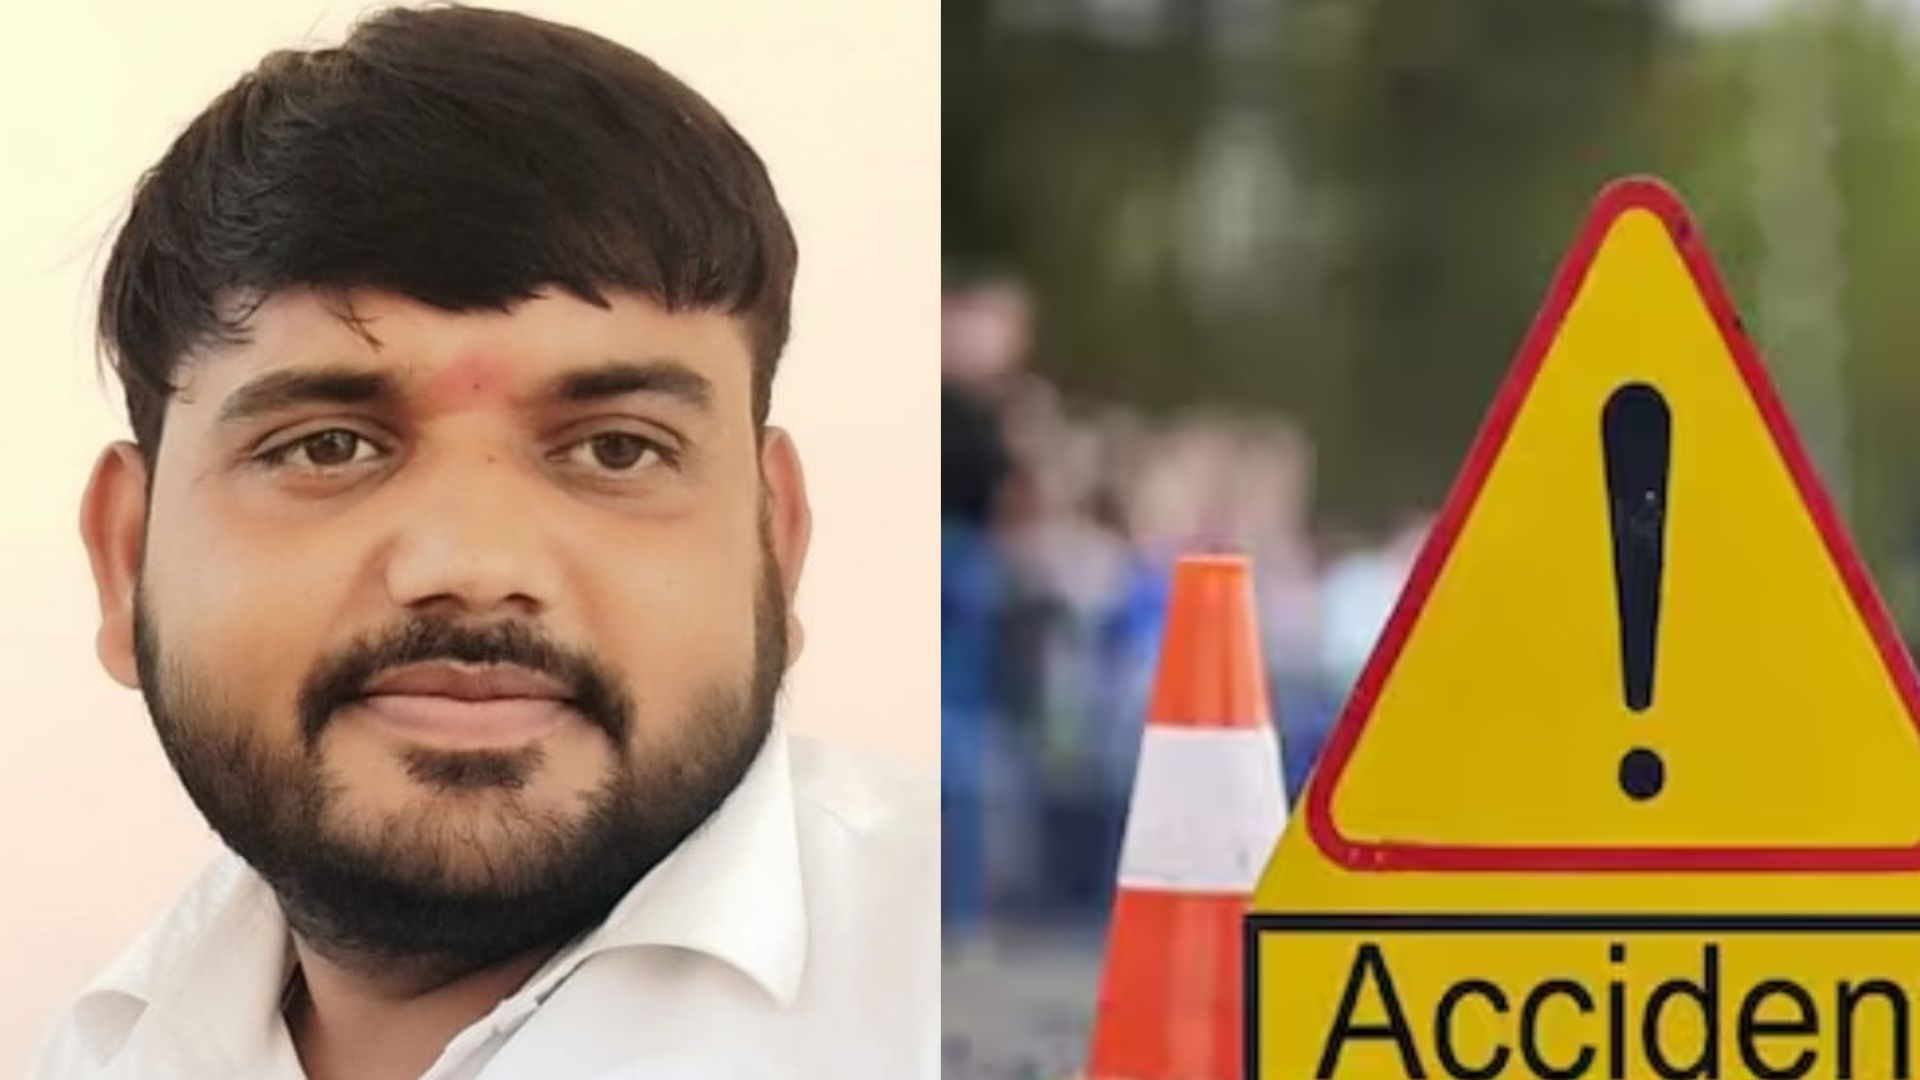 लखीमपुर खीरी: सड़क दुर्घटना में बाइक सवार अधिवक्ता की मौत, दो महीने पहले हुई थी शादी 